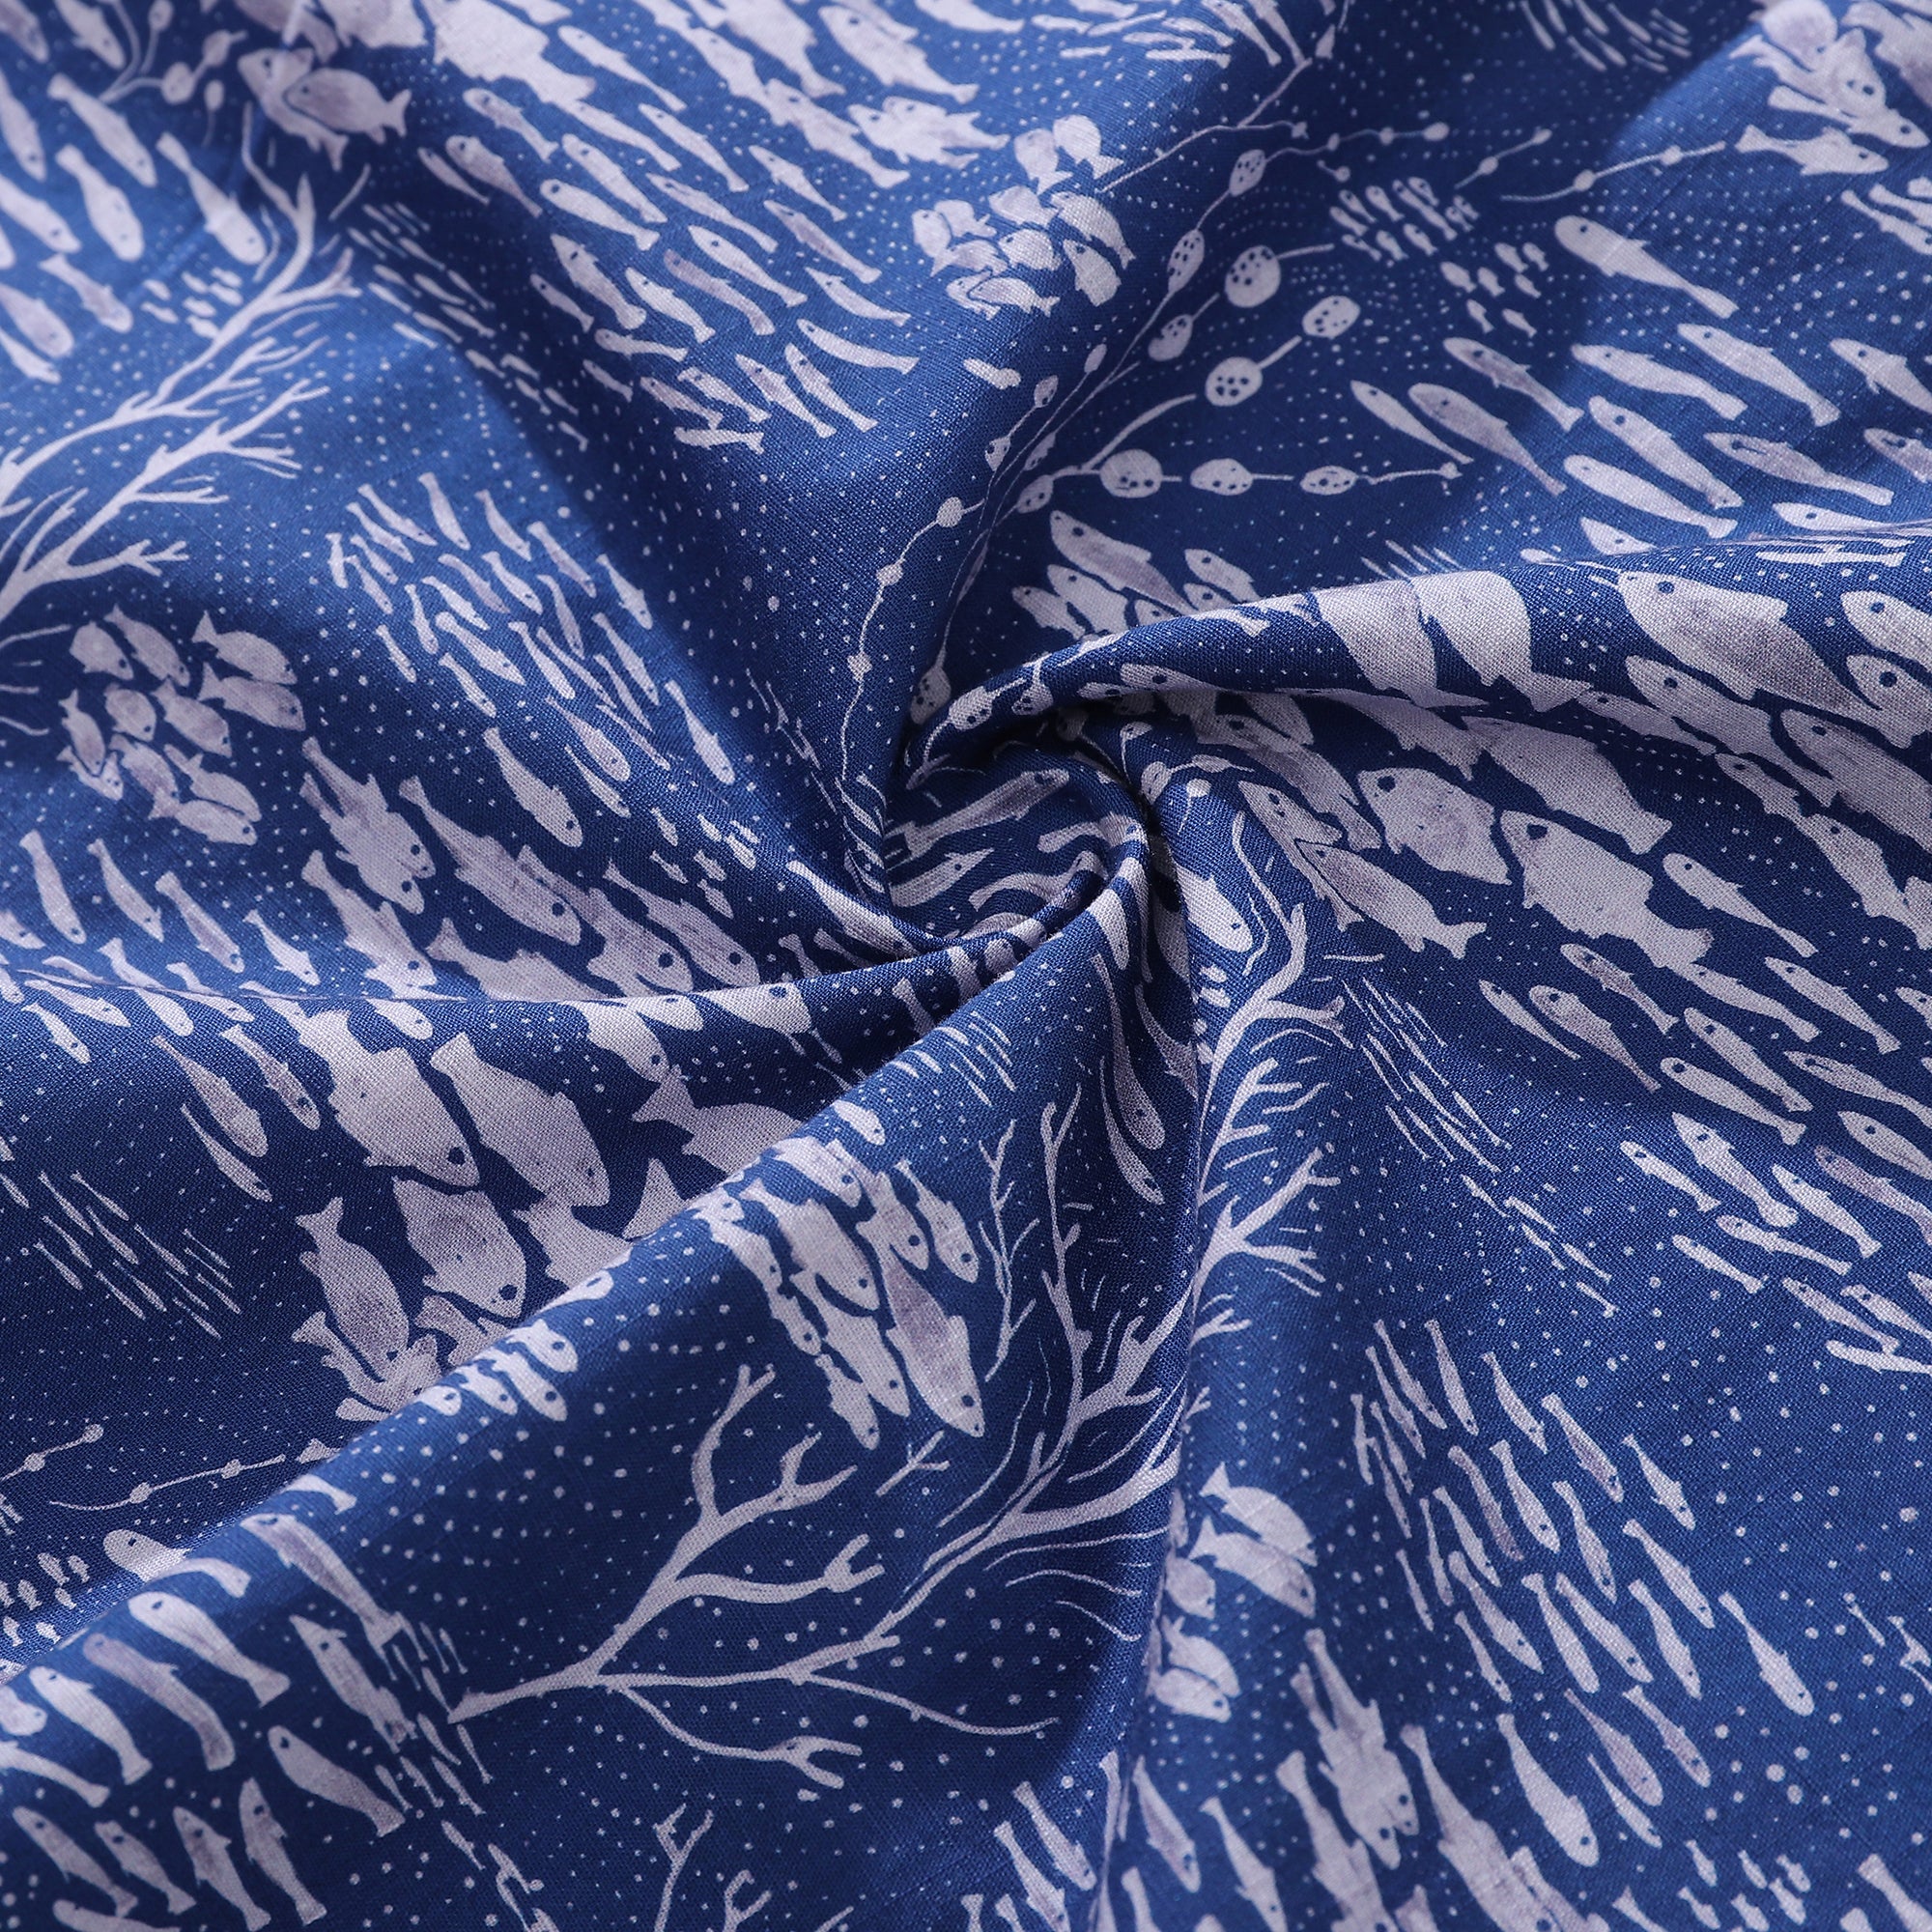 Men's Hawaiian Shirt Shoal Layered Print By Katie O'Shea Design Cotton ...